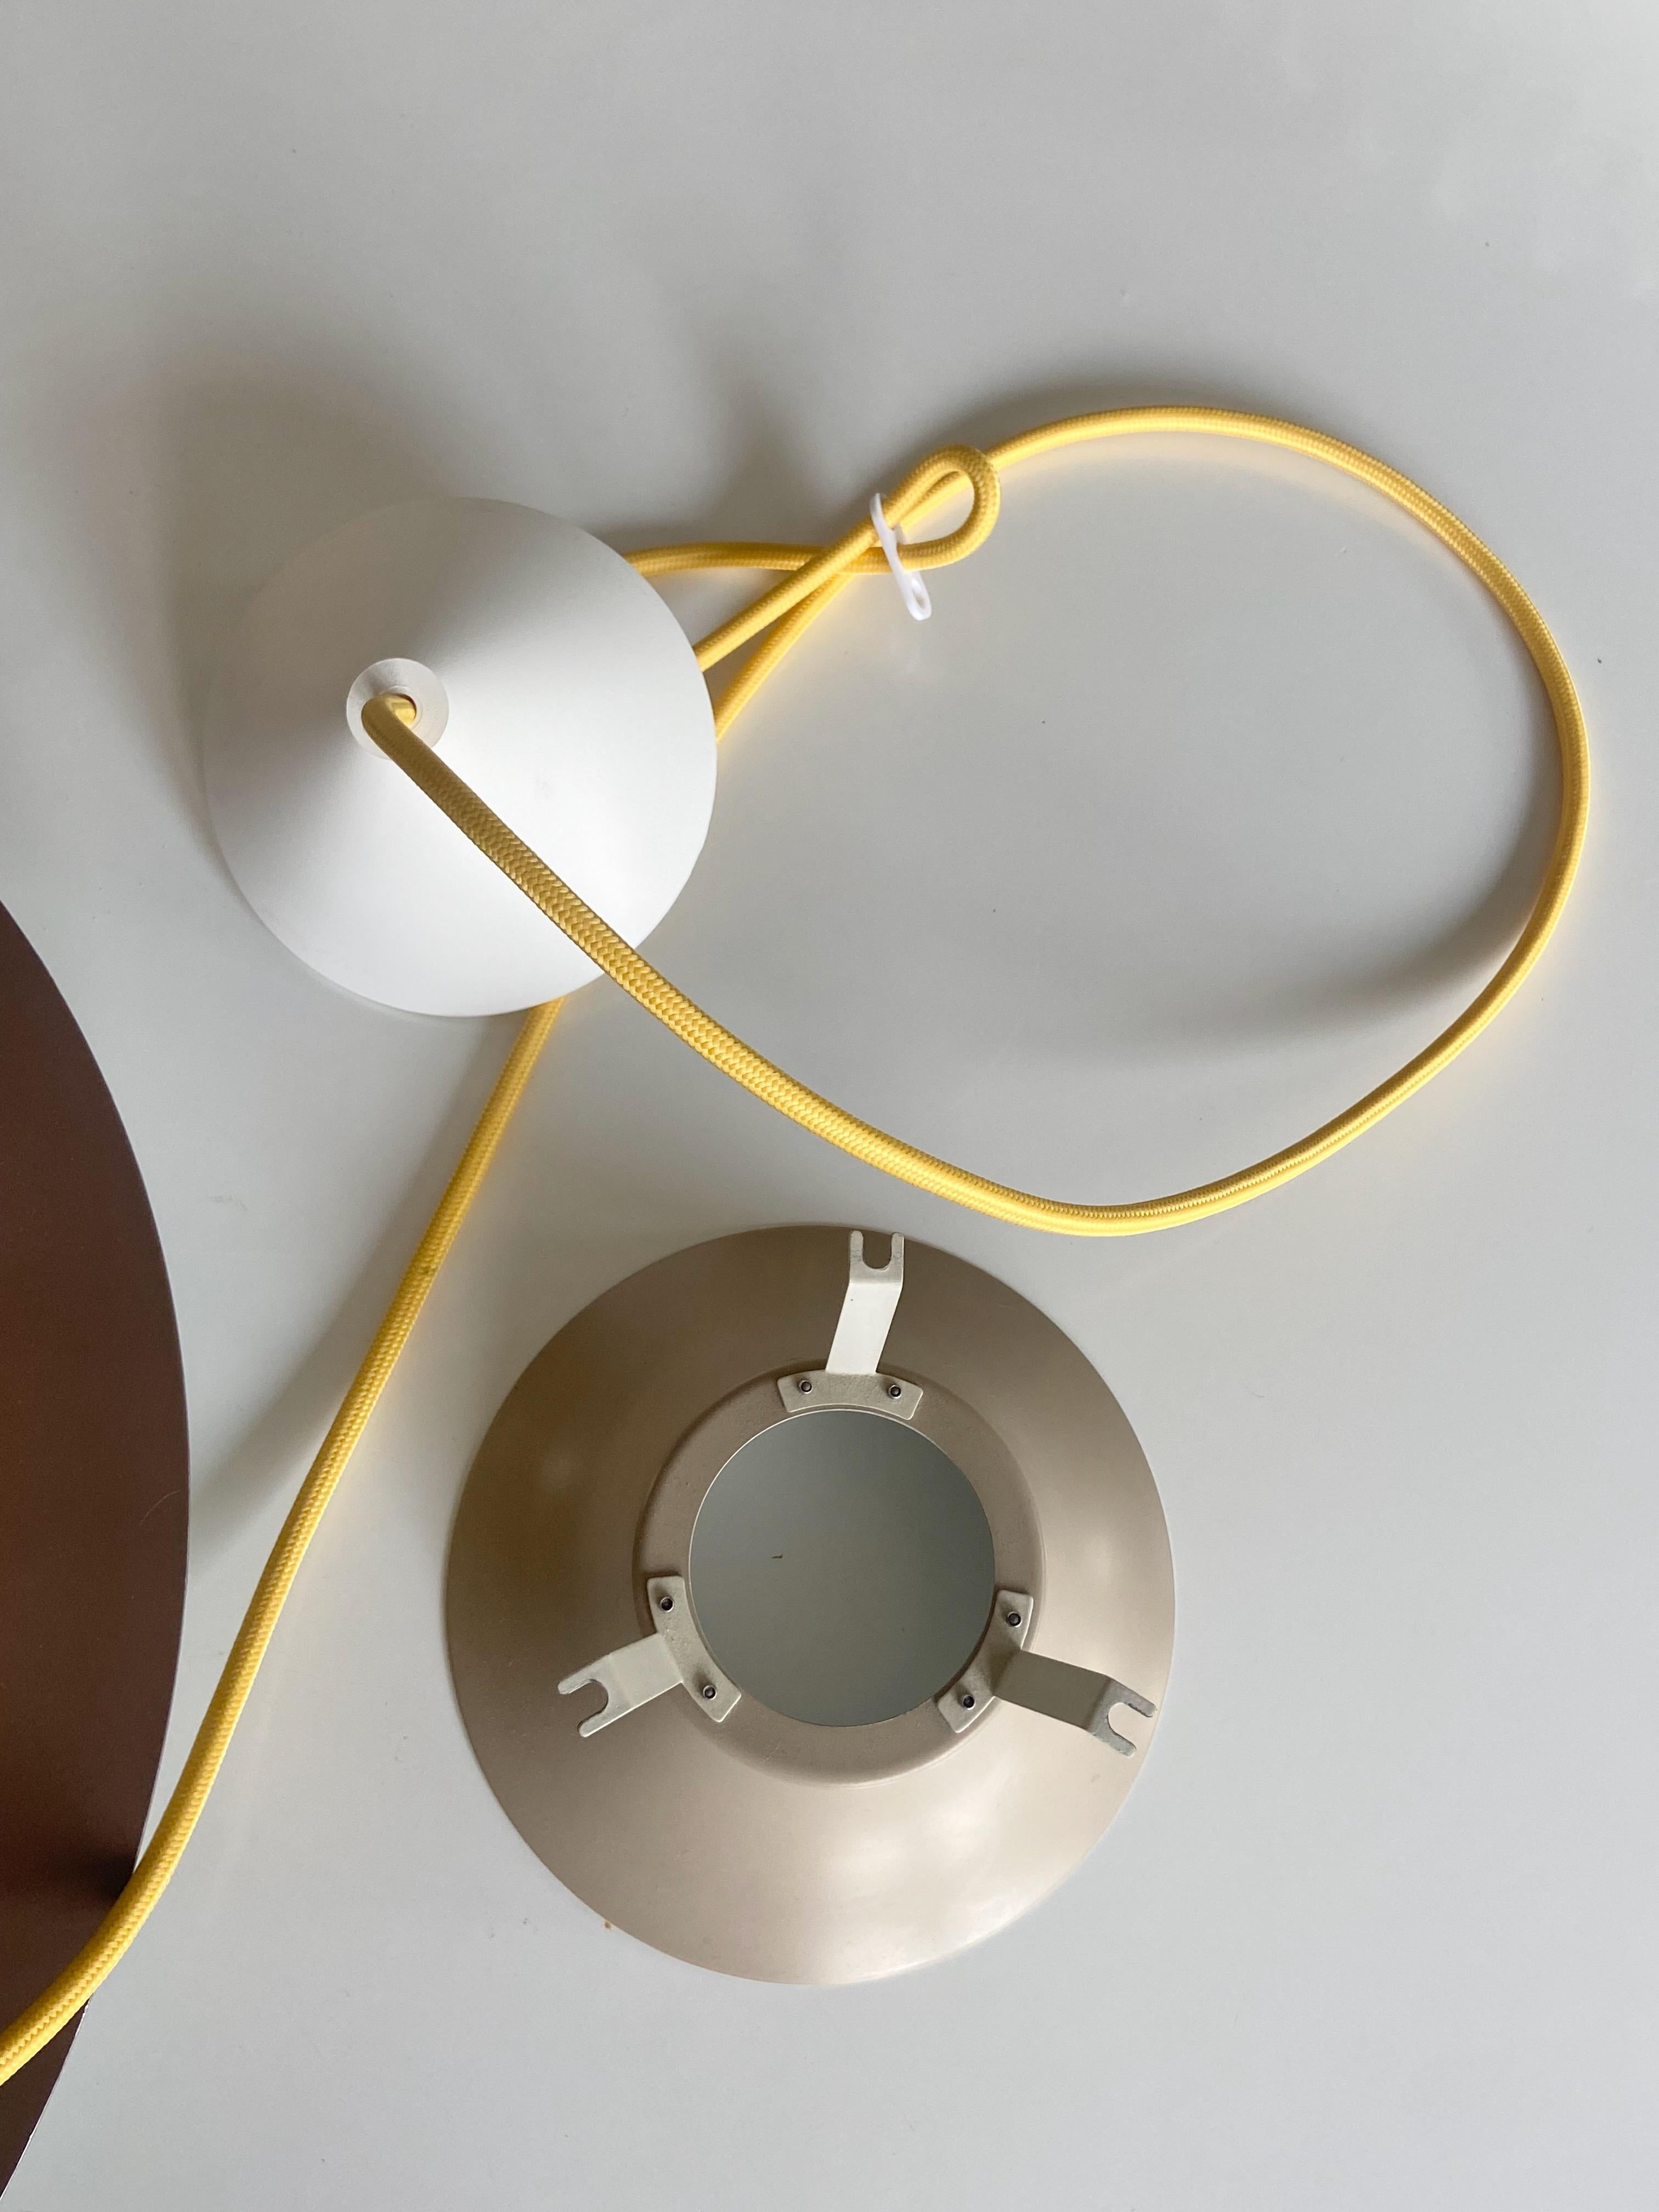 Fin du 20e siècle Lampe pendante vintage Radius 1 Design by Erik Balslev for Fog & Mørup, Danemark